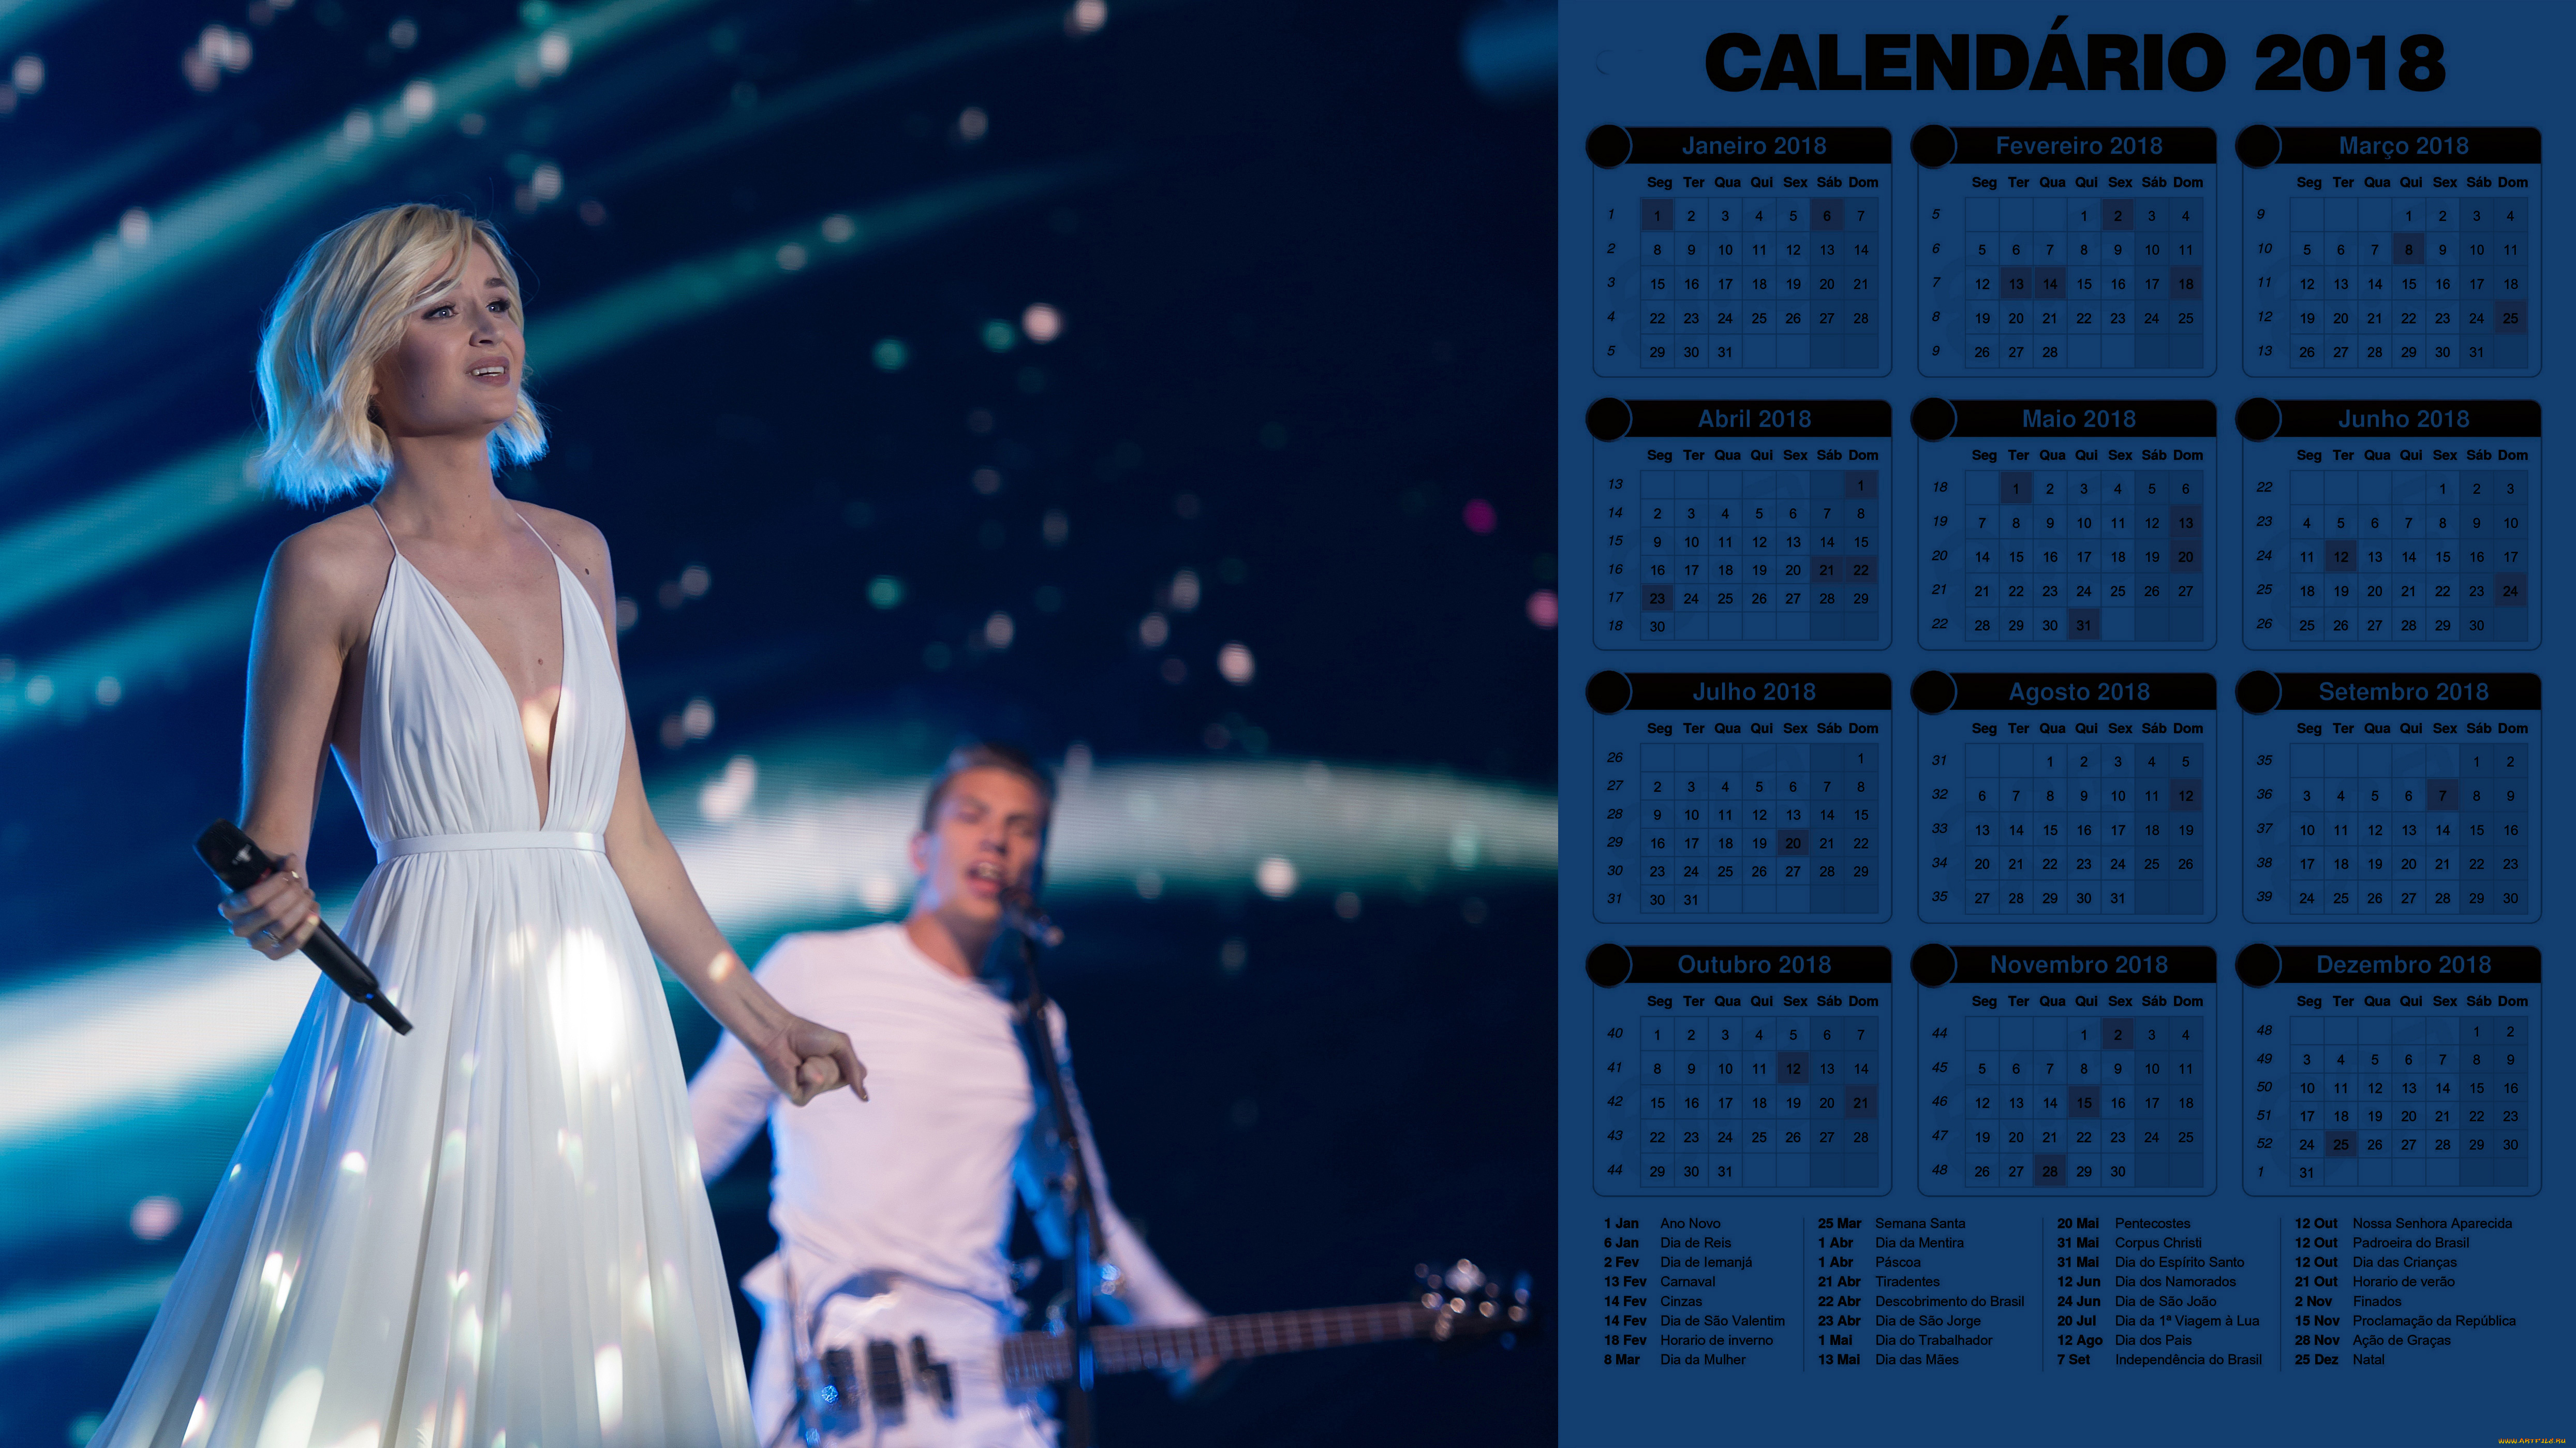 календари, знаменитости, концерт, выступление, девушка, гитара, парень, певица